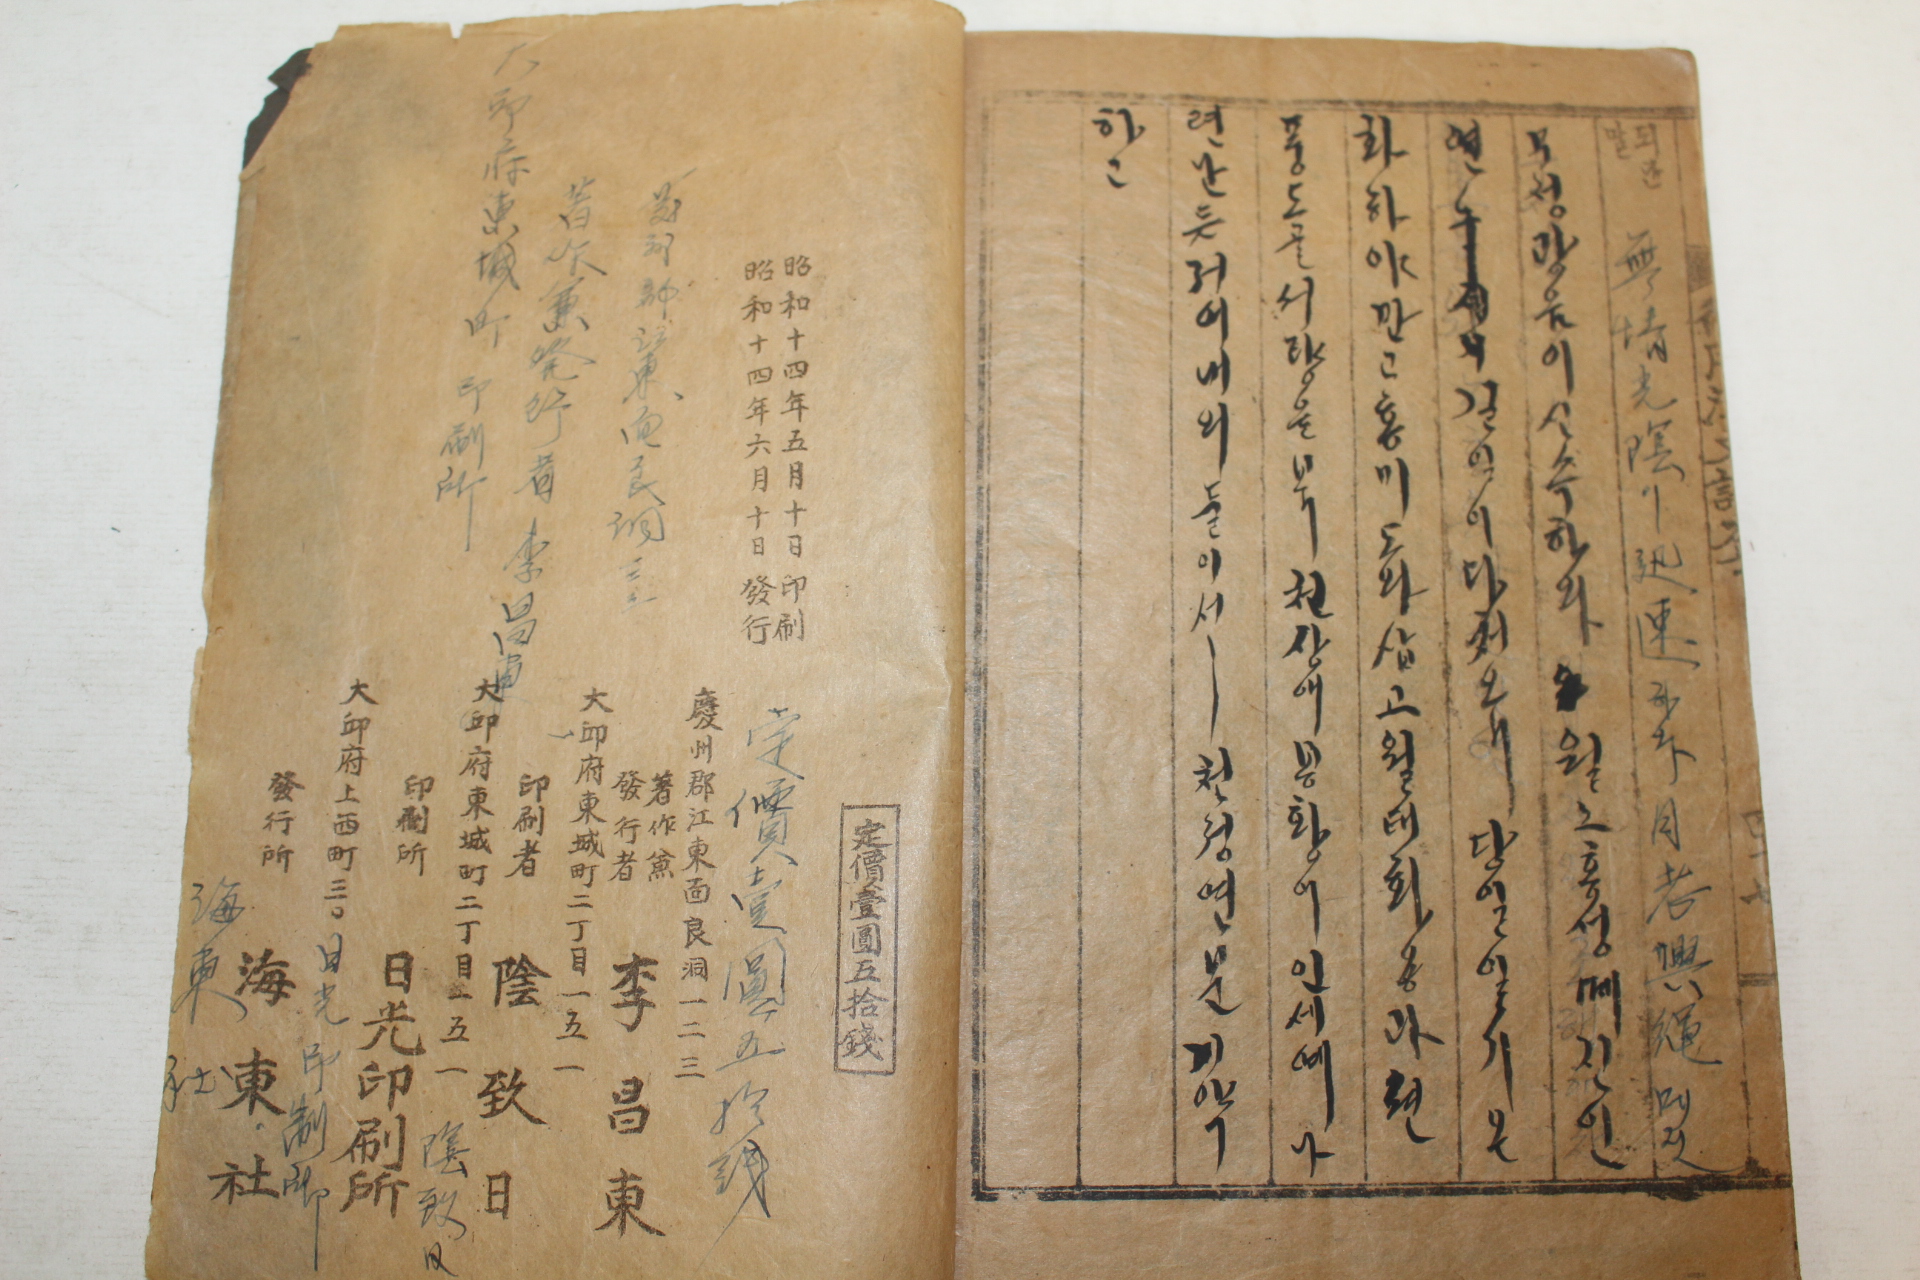 1939년 이창동(李昌東) 행용한문어투(行用漢文語套) 1책완질